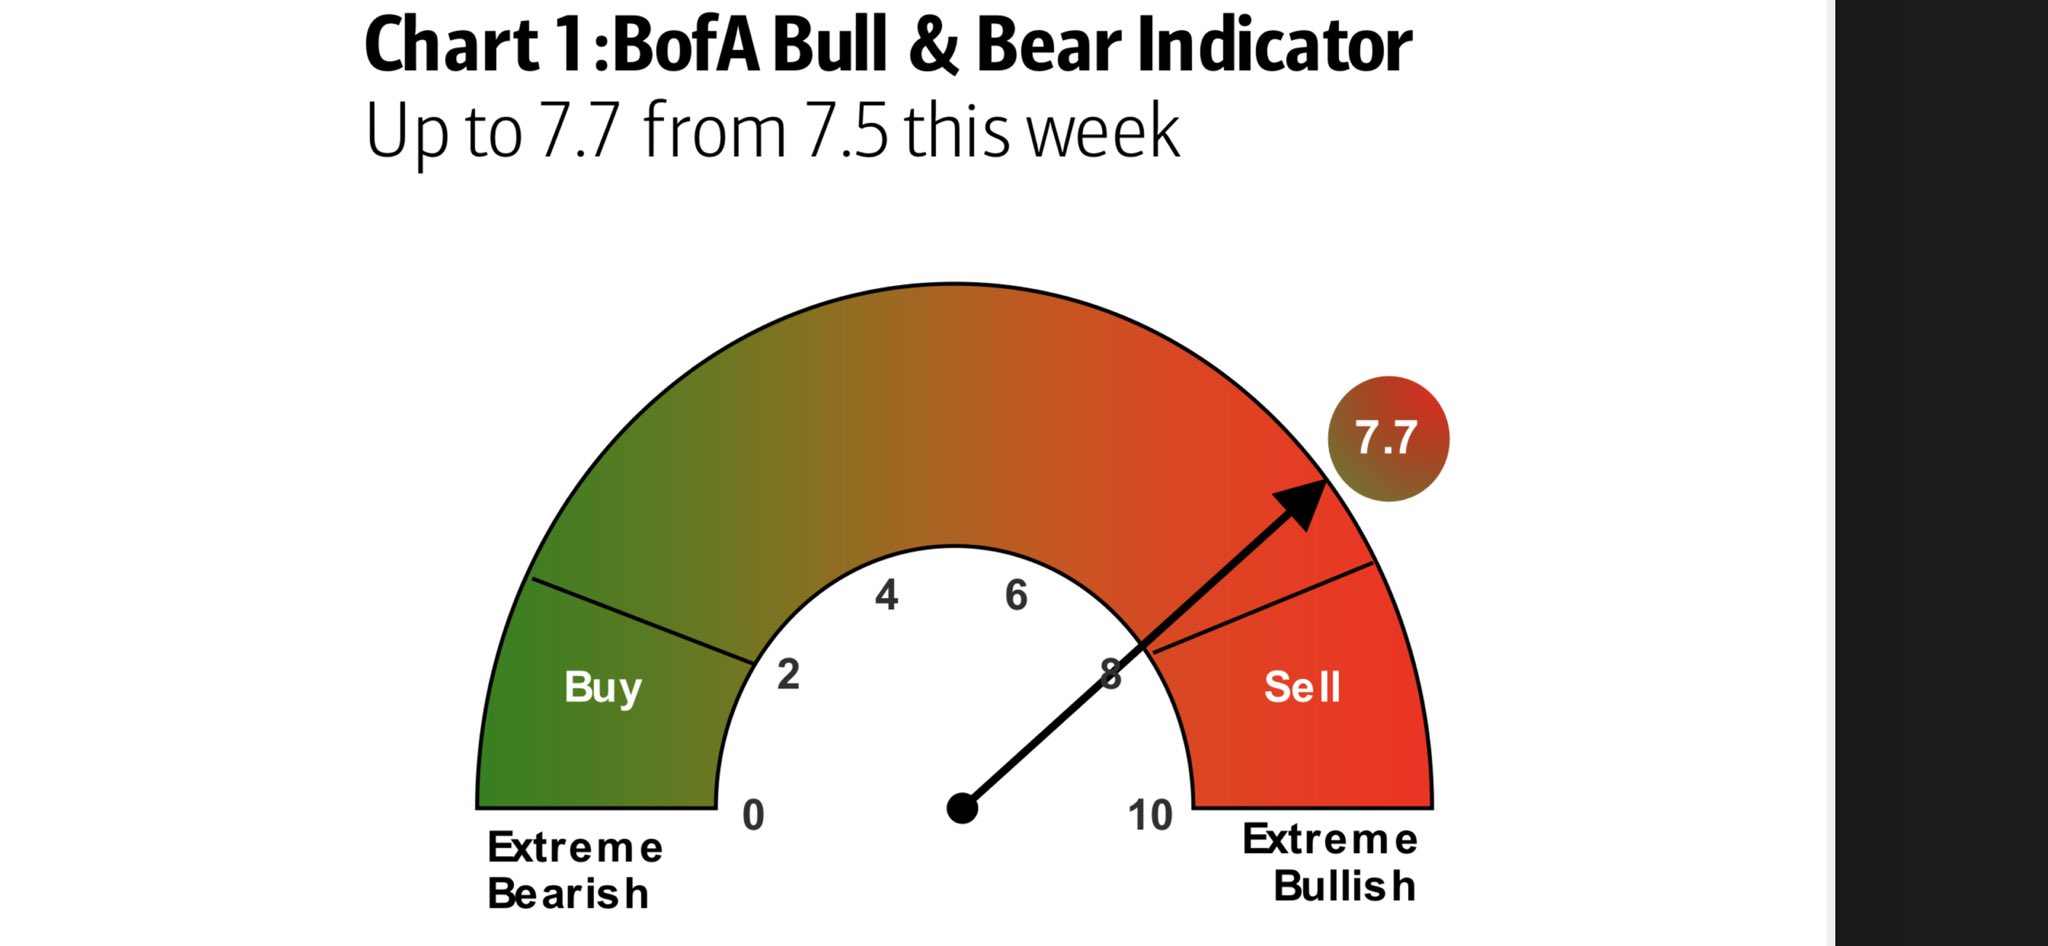 BofA Bull and Bear indicator signals a bullish week